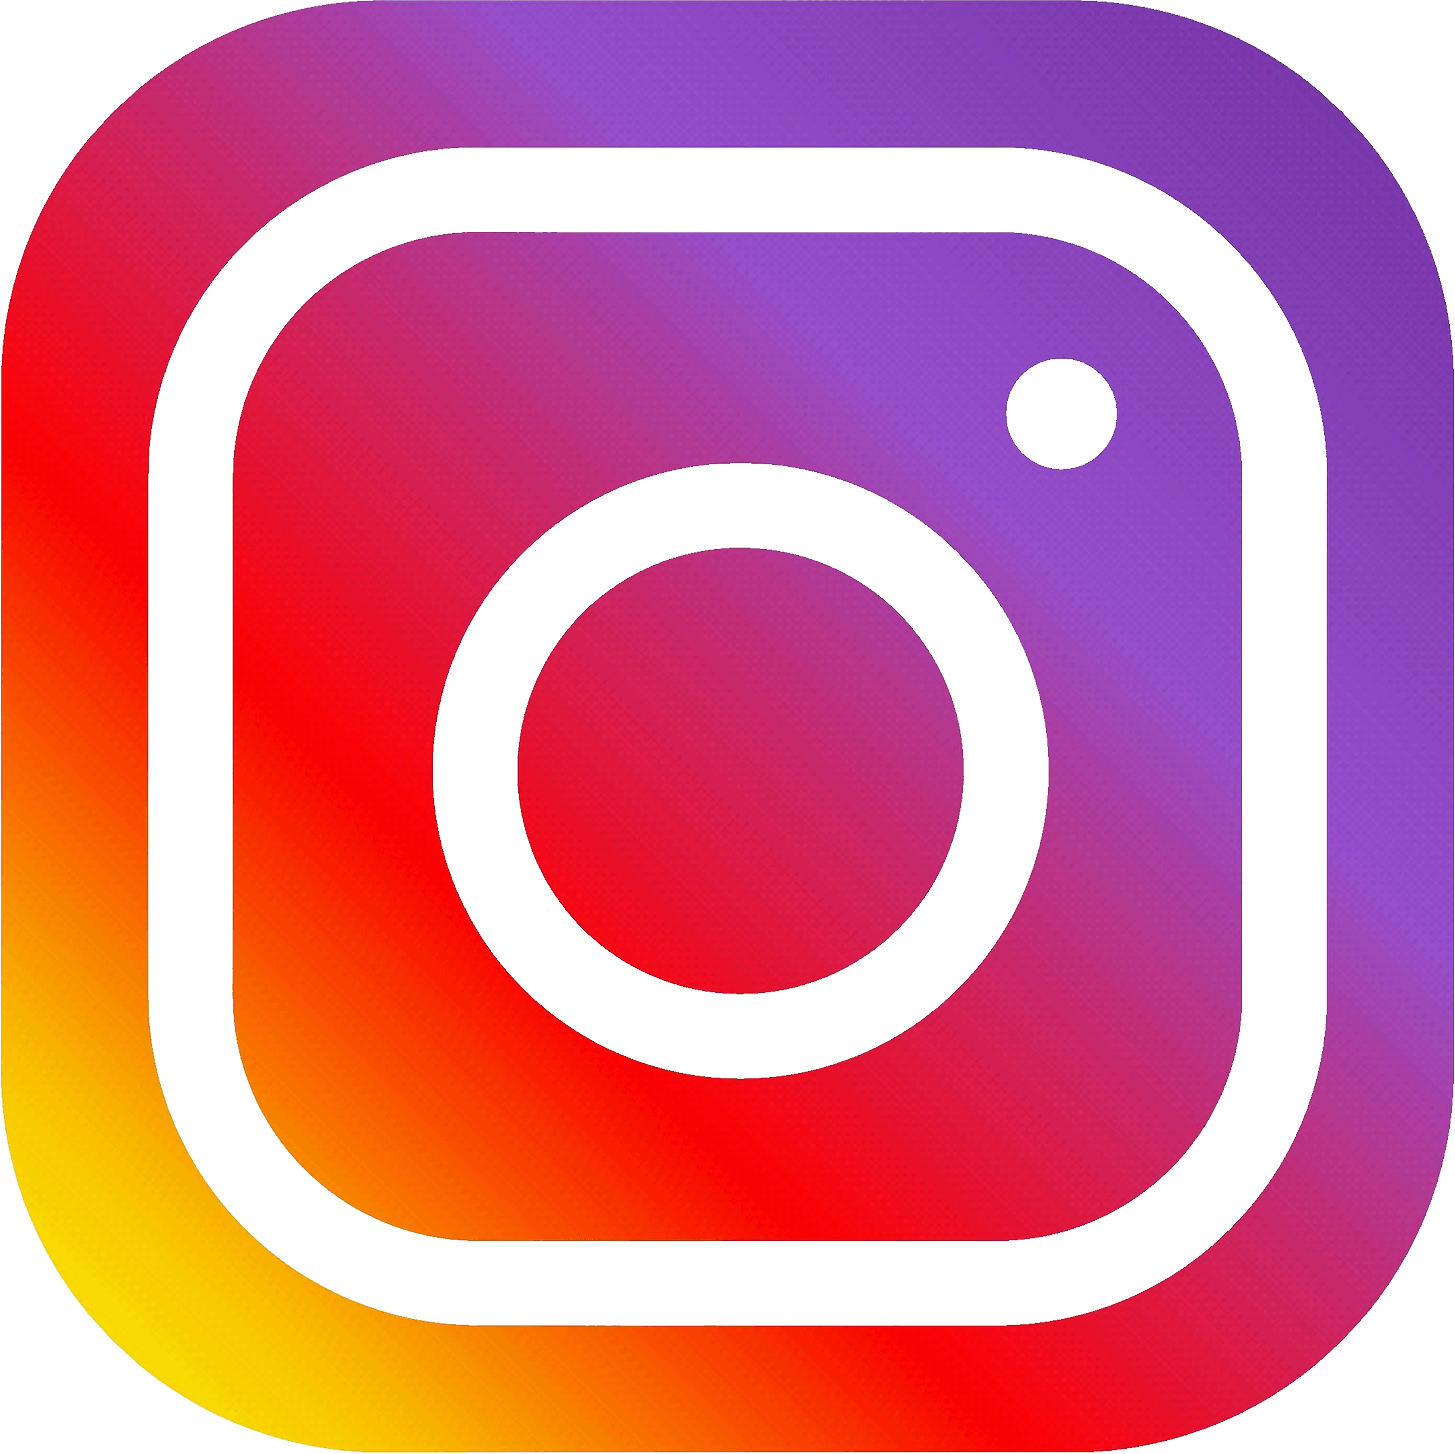 L'équipe Vital Concept sur Instagram